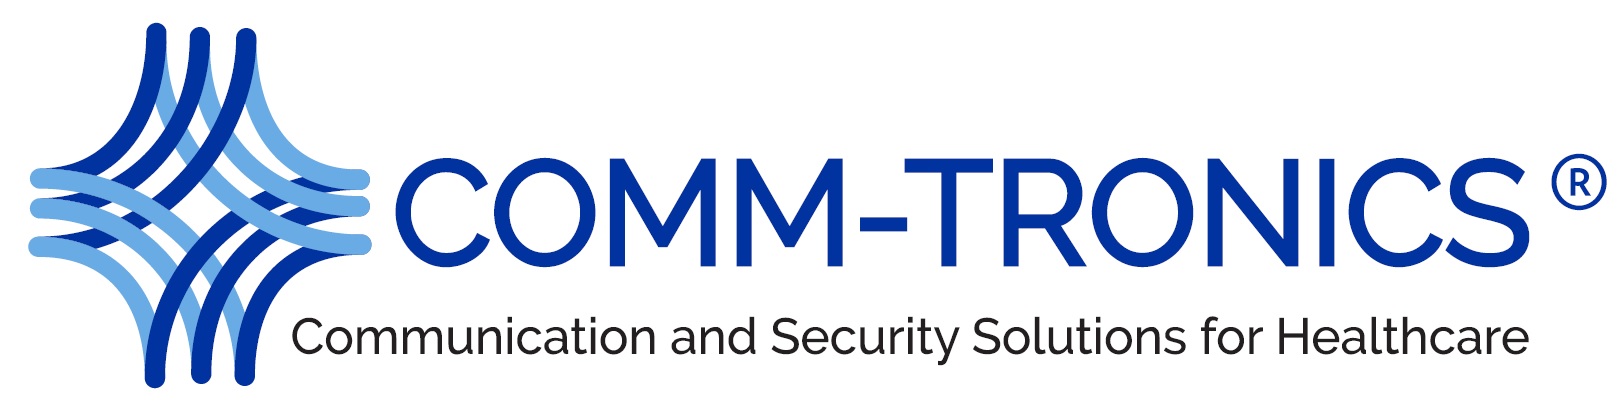 Comm-Tronics-2018-logo